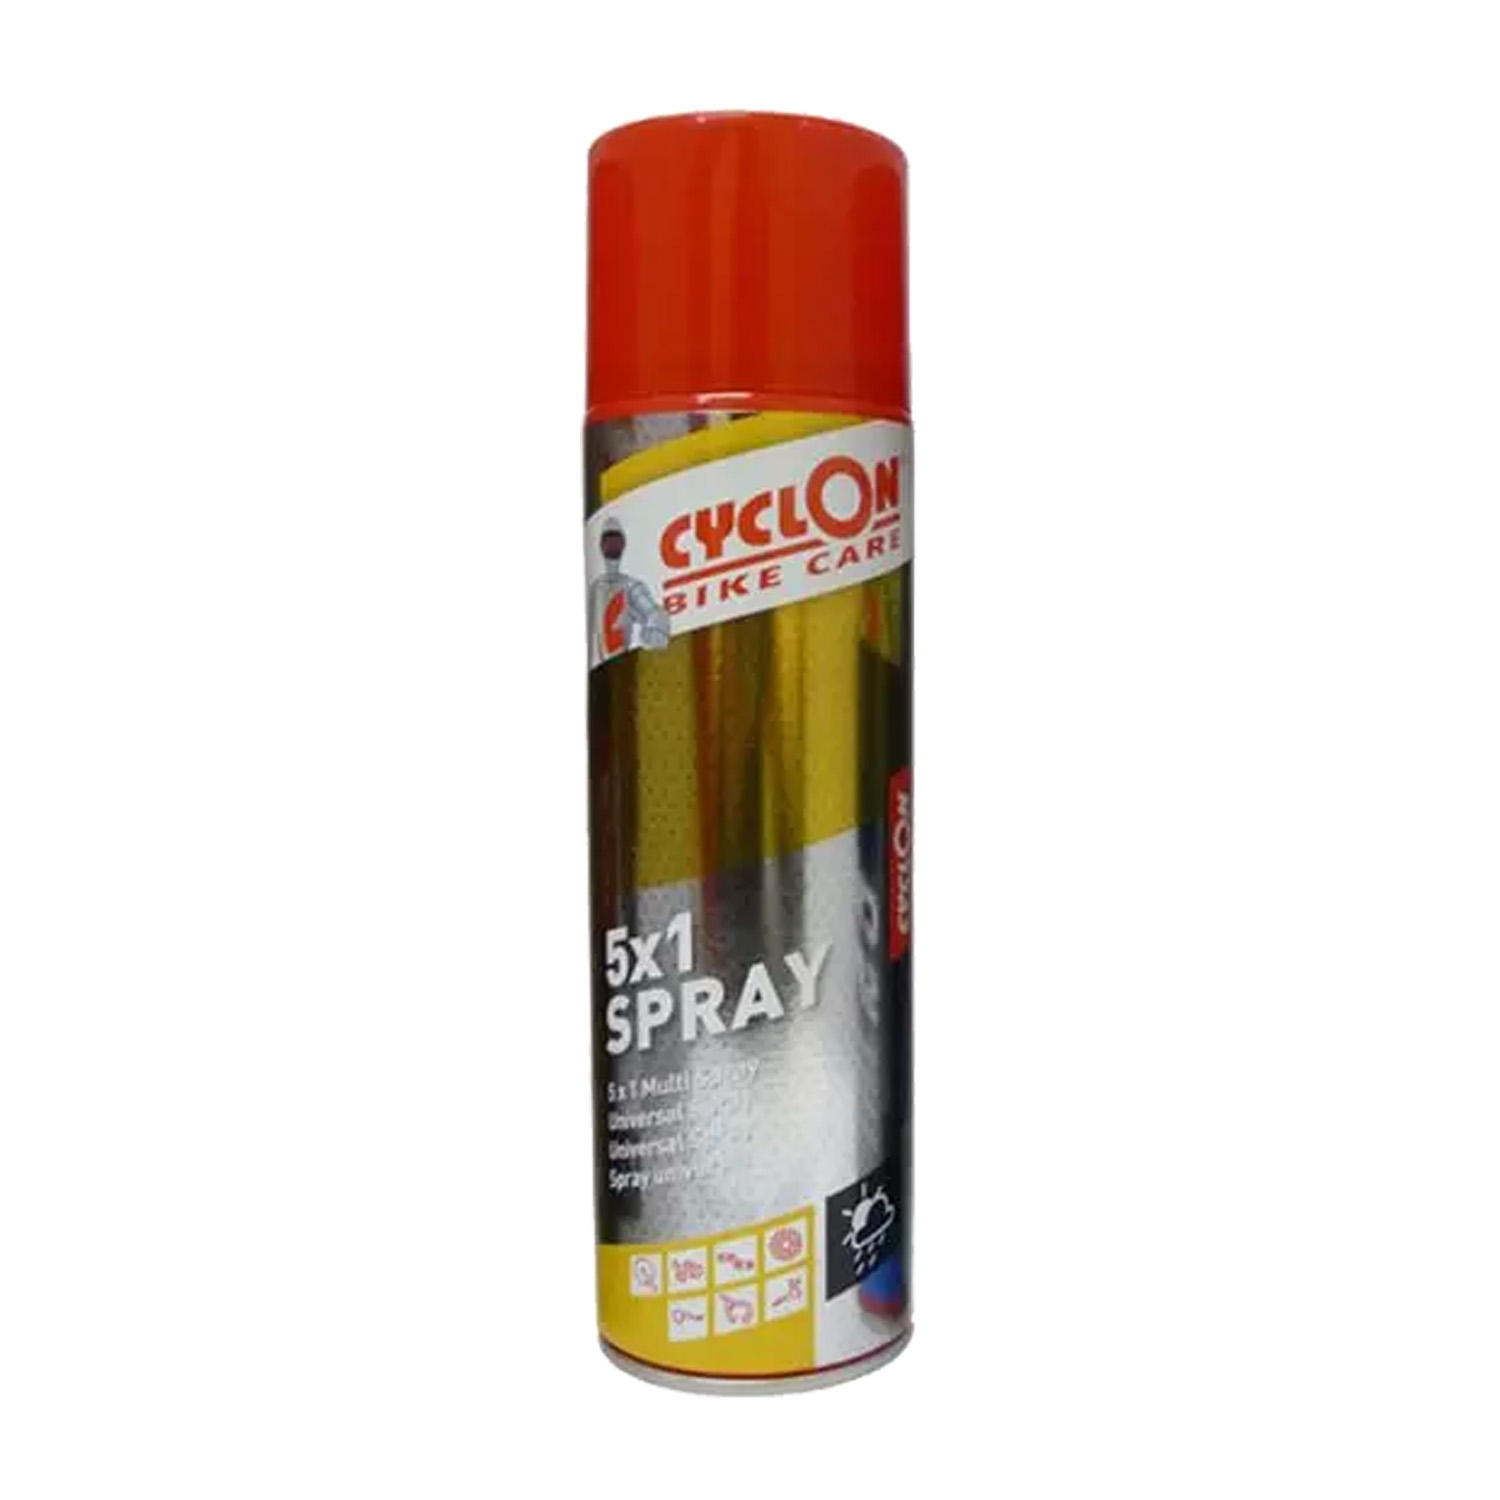 Cyclon 5x1 spray